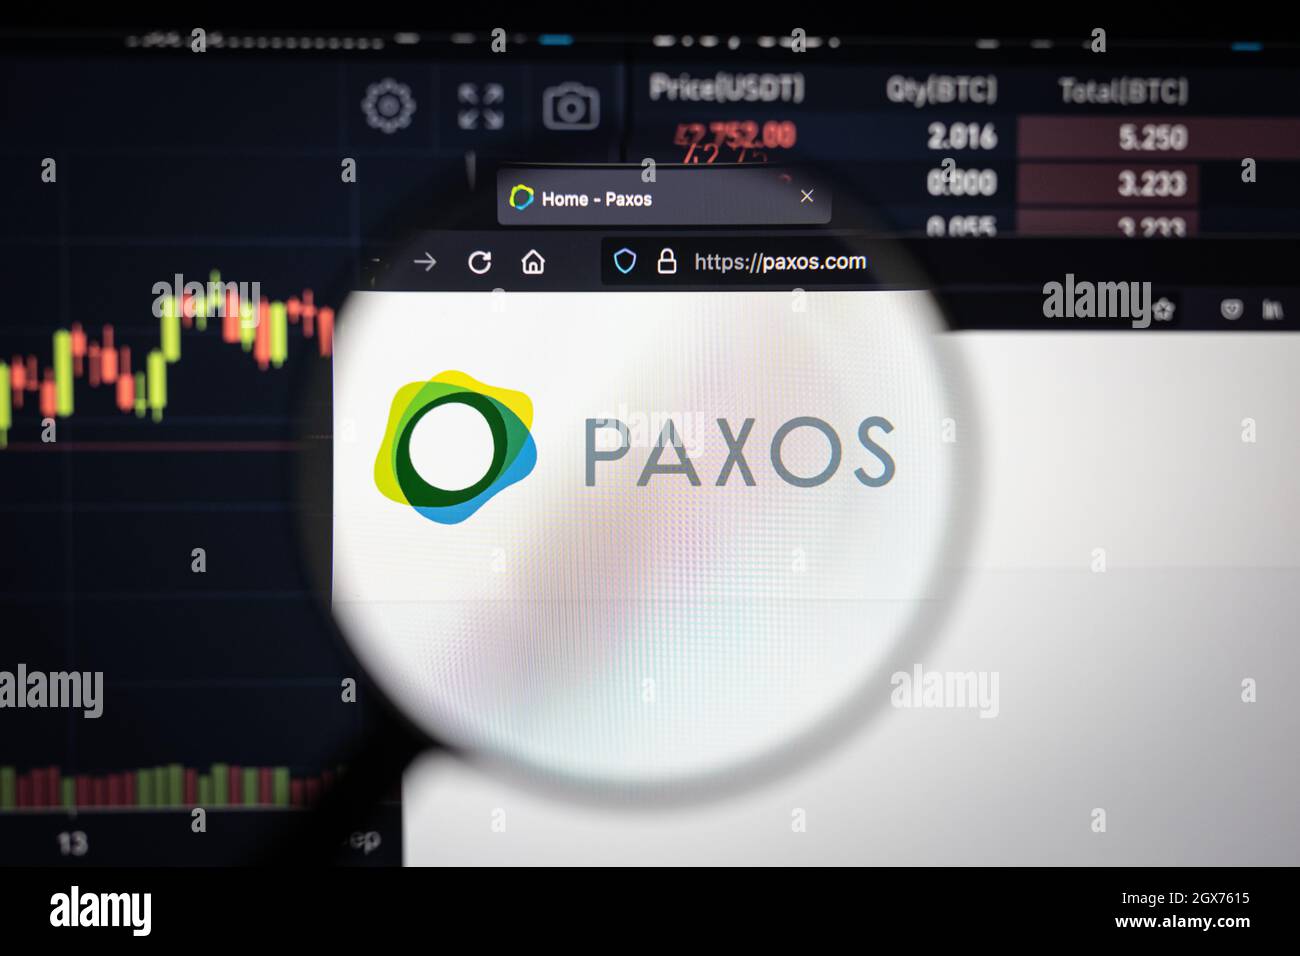 Le logo de la société Paxos sur un site Web avec des développements flous de marché boursier en arrière-plan, vu sur un écran d'ordinateur à travers une loupe Banque D'Images